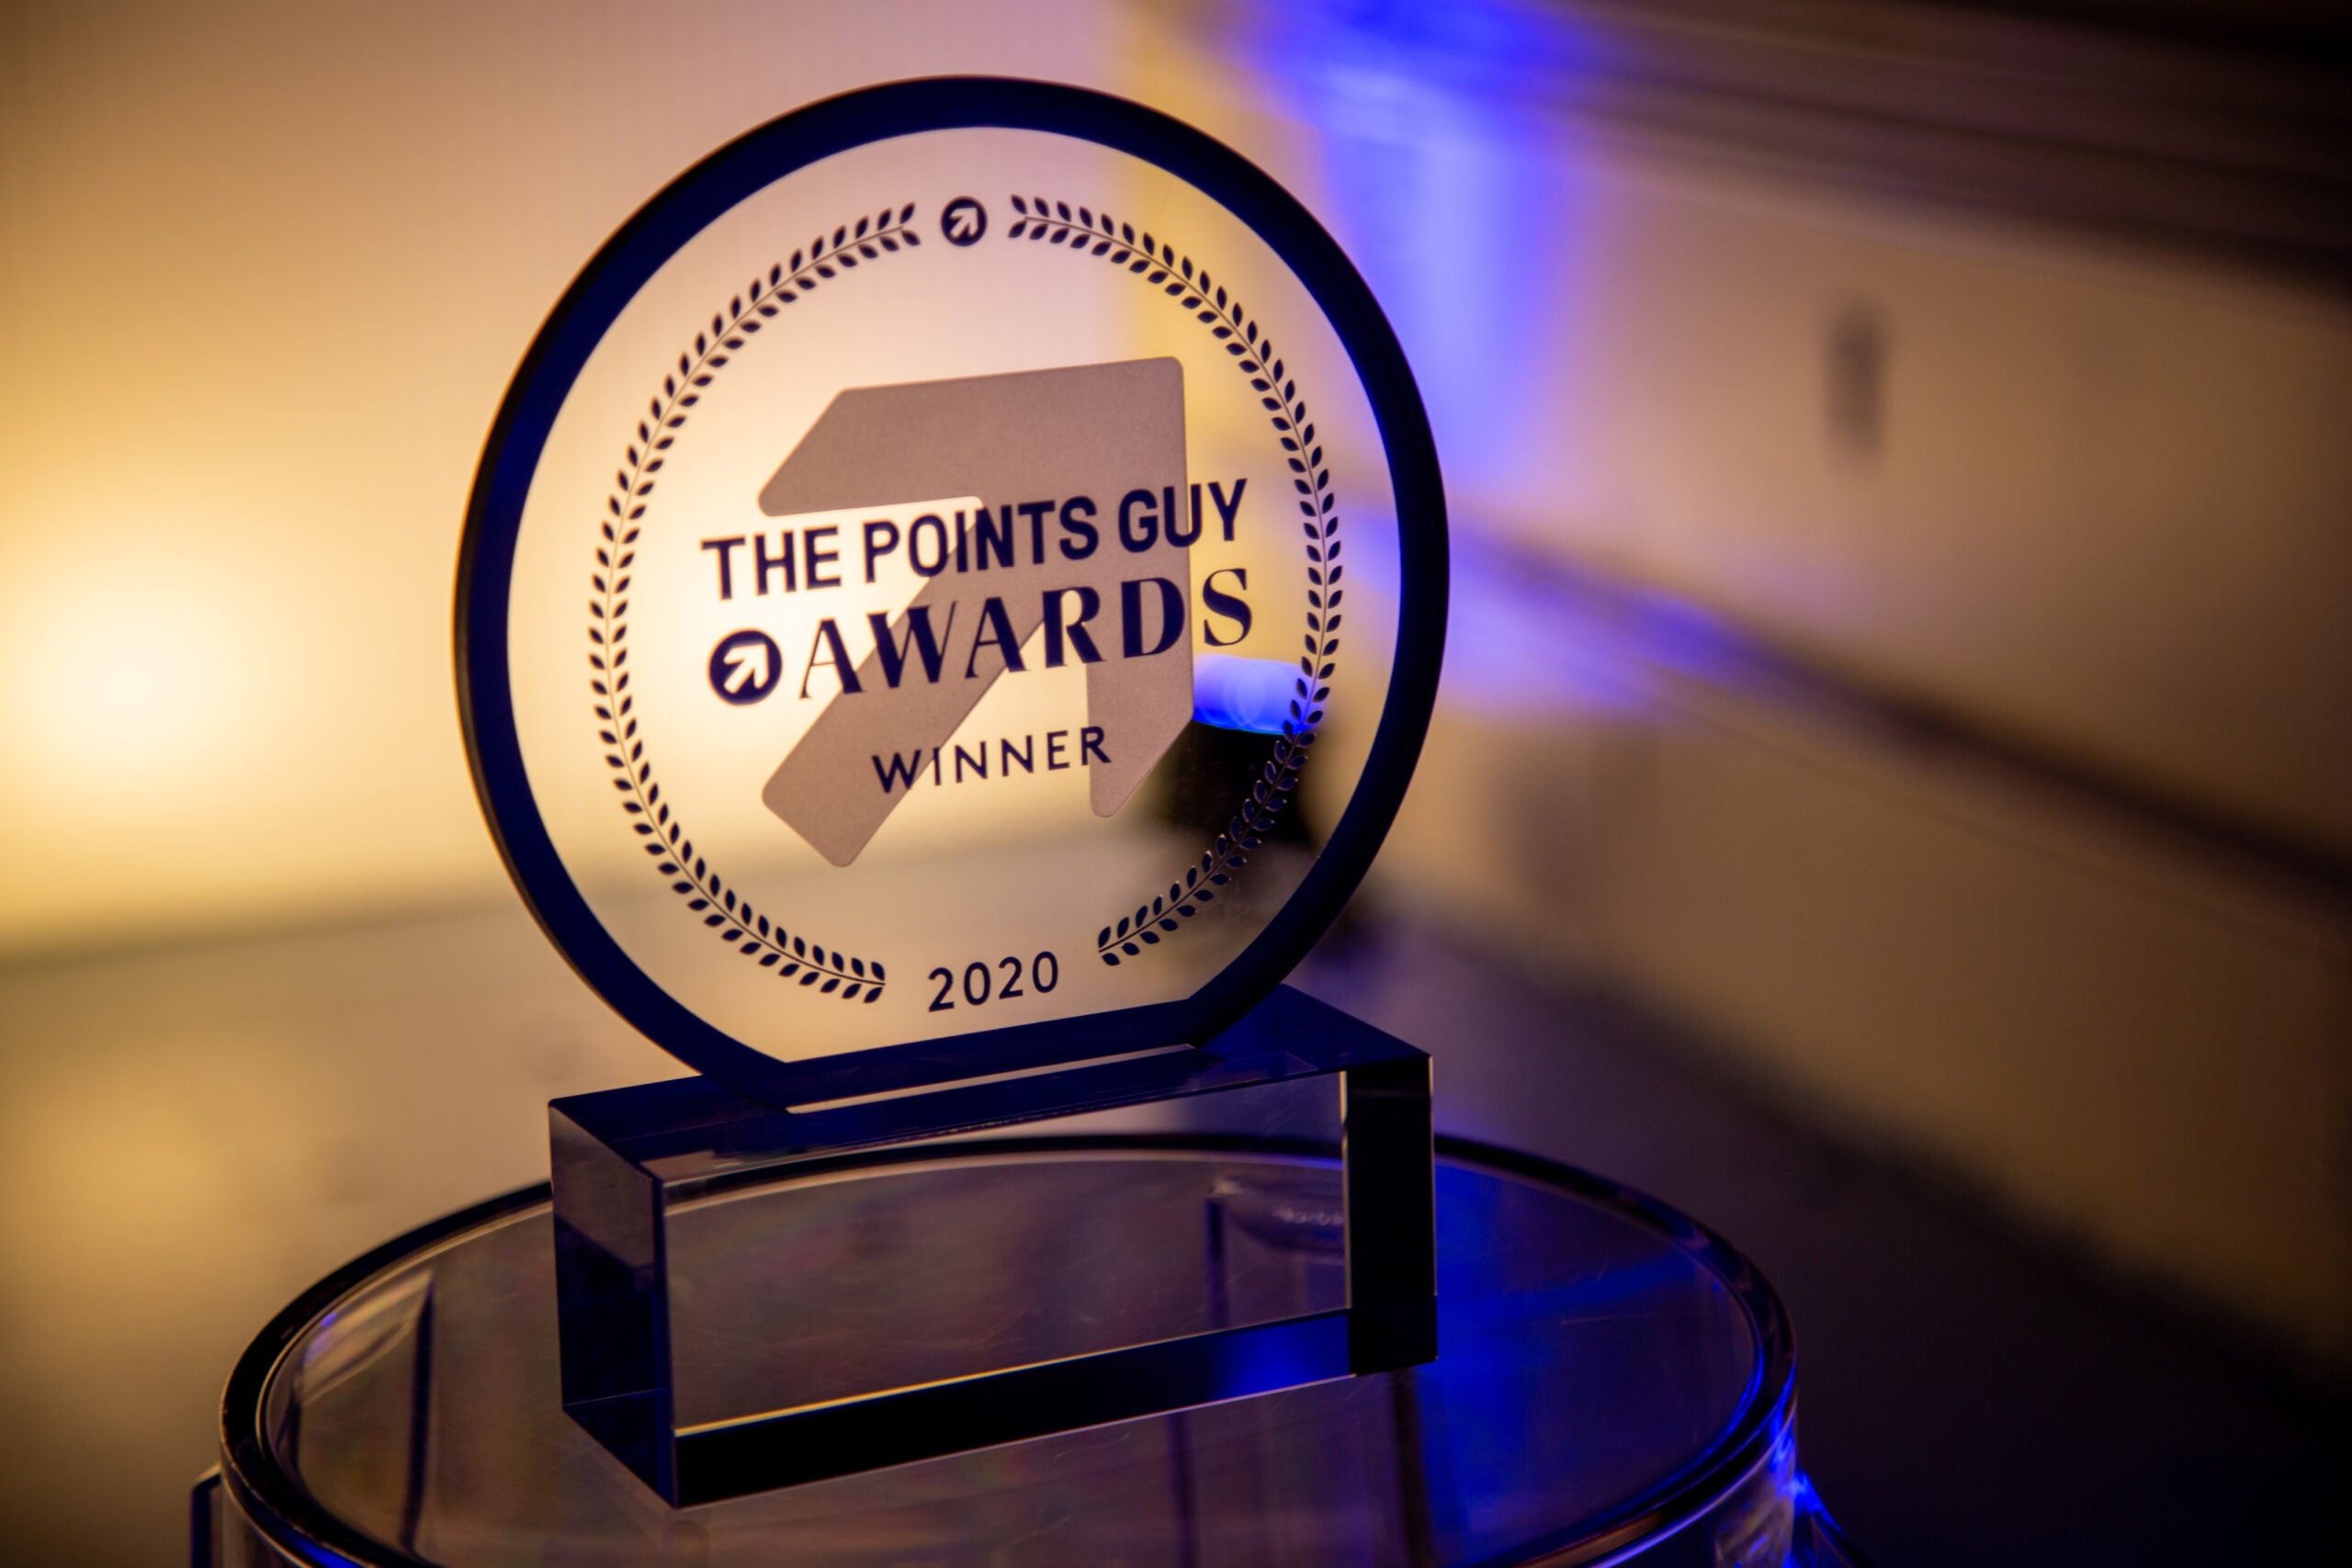 TPG Awards Trophy 2020-5